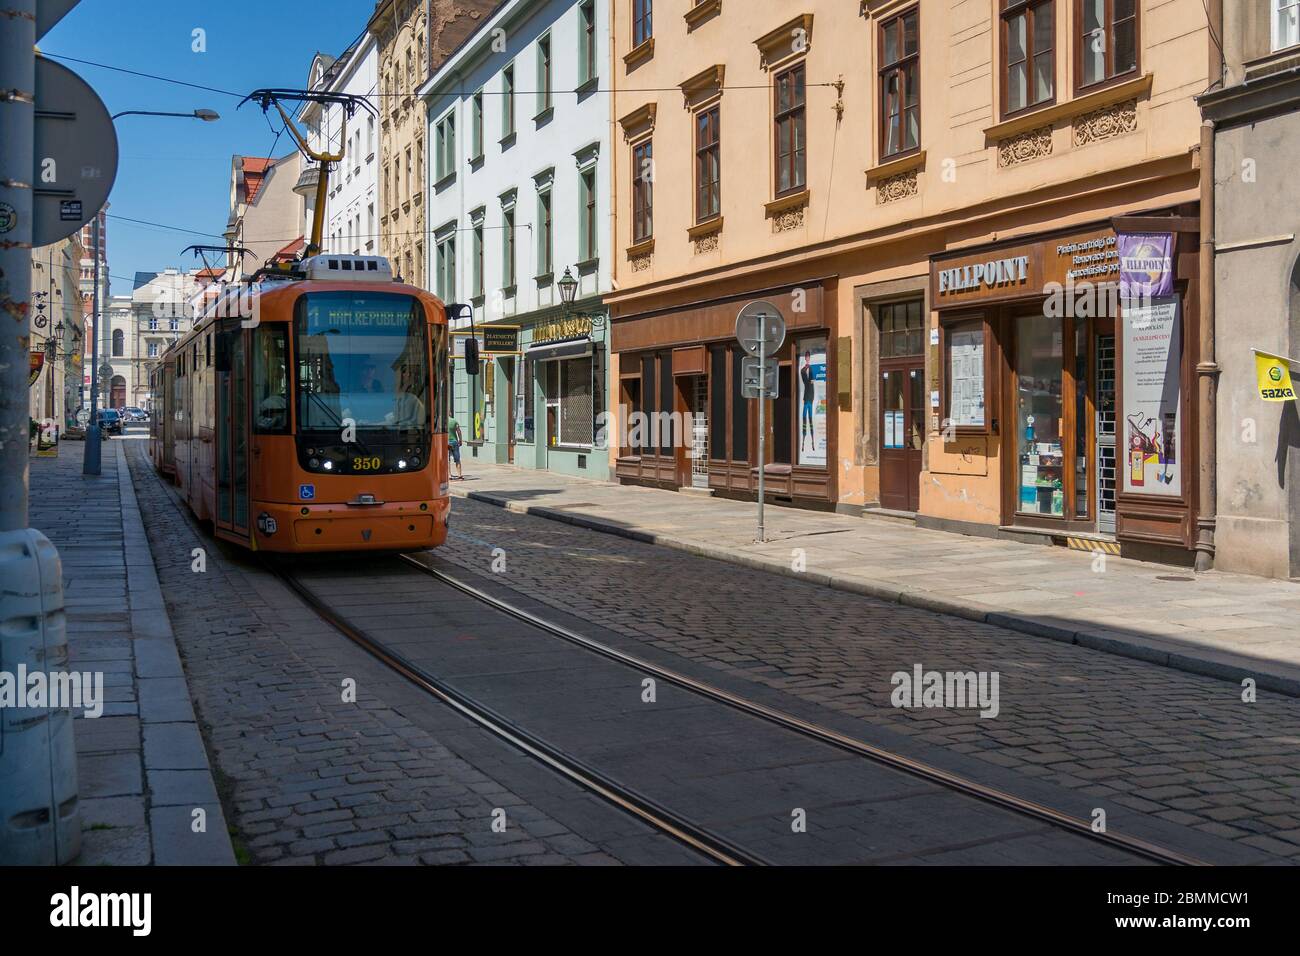 Pilsen, République tchèque - 26 mai 2018 : tramway moderne dans les rues historiques de la ville de Pilsen en République tchèque Banque D'Images